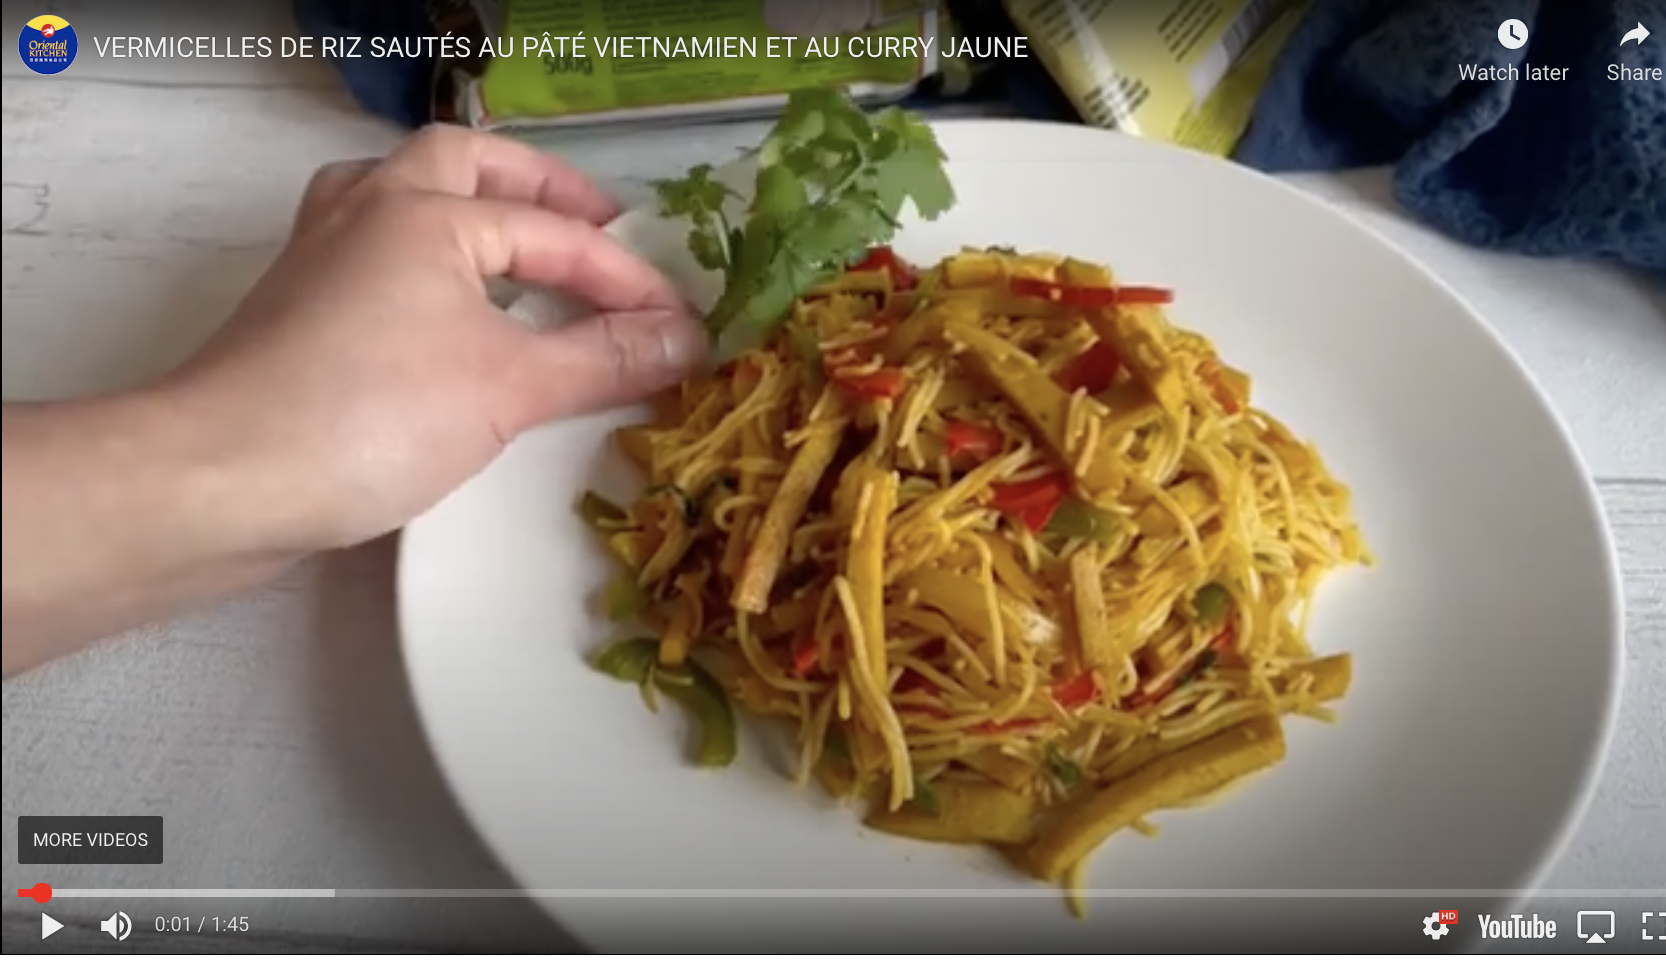 Vermicelles de riz sautés au Gio pâté vietnamien et au curry jaune